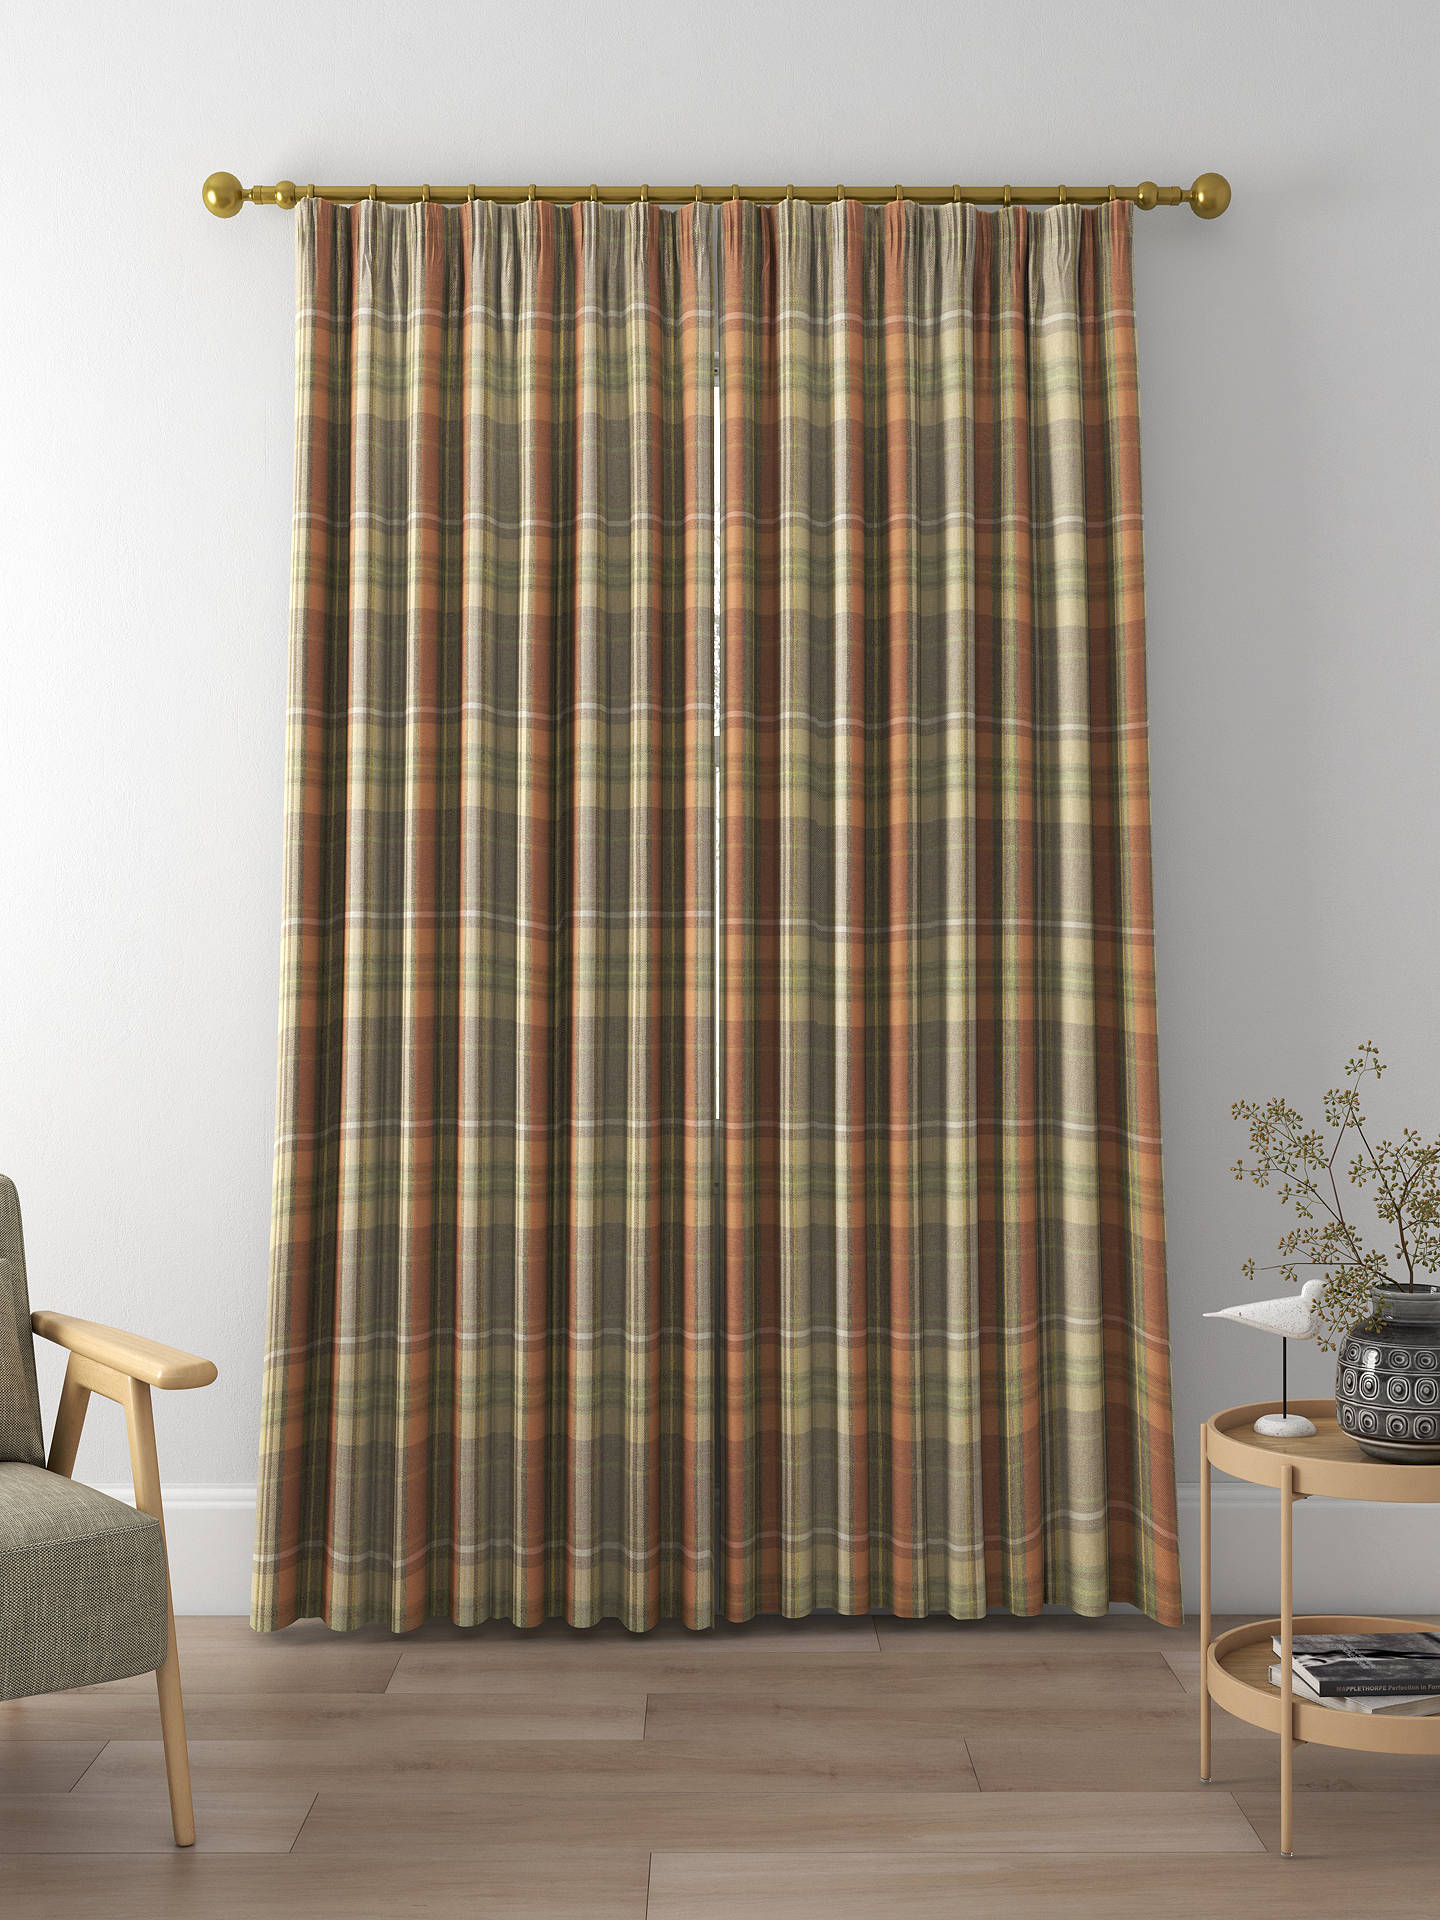 Prestigious Textiles Strathmore Made to Measure Curtains, Auburn